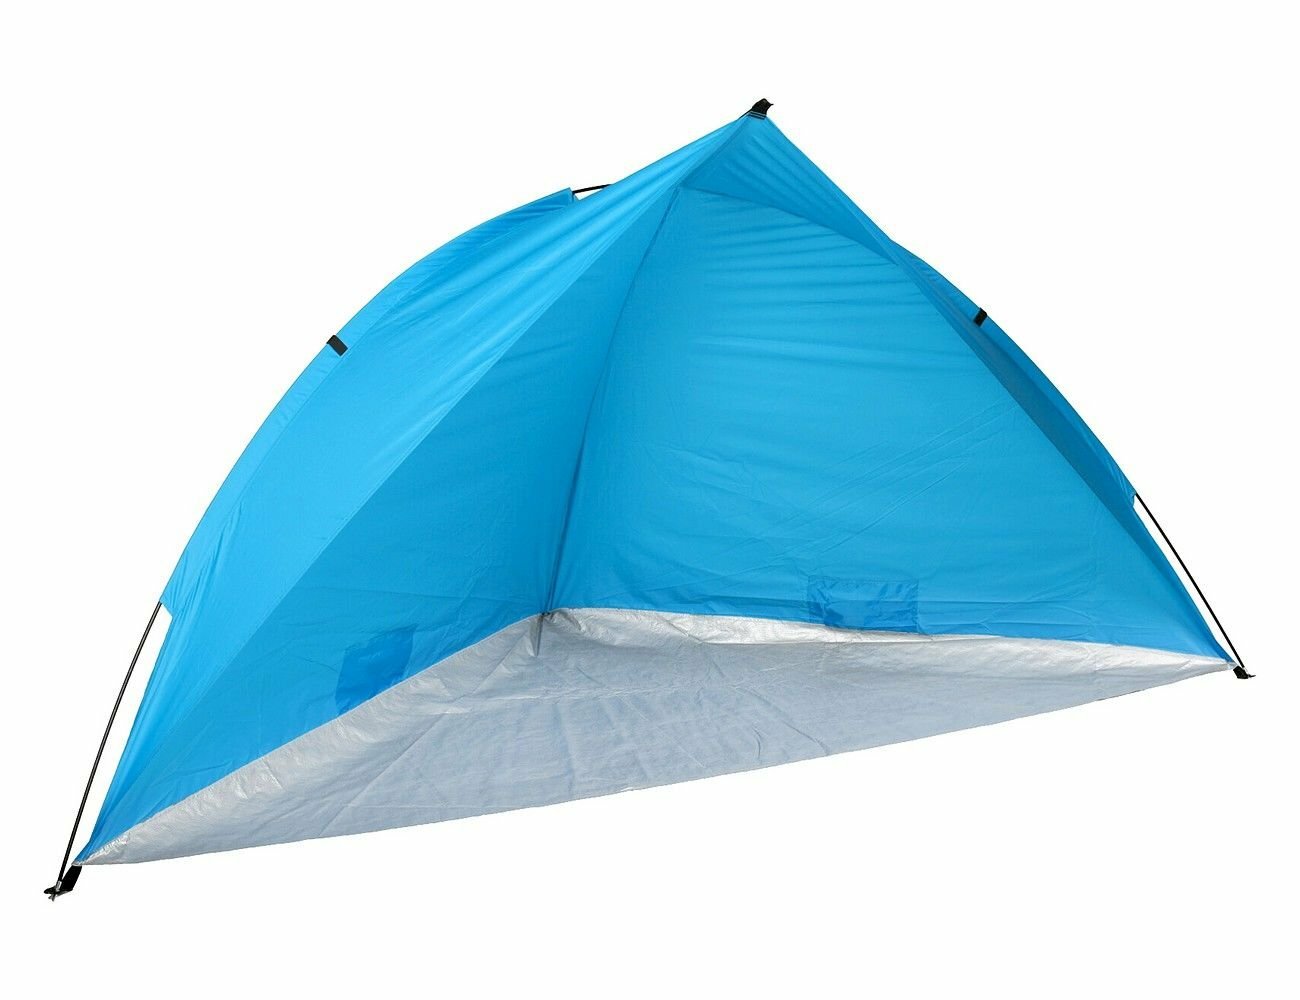 Пляжная палатка лабри, голубая, 260х110х110 см, Koopman International X61900560-2